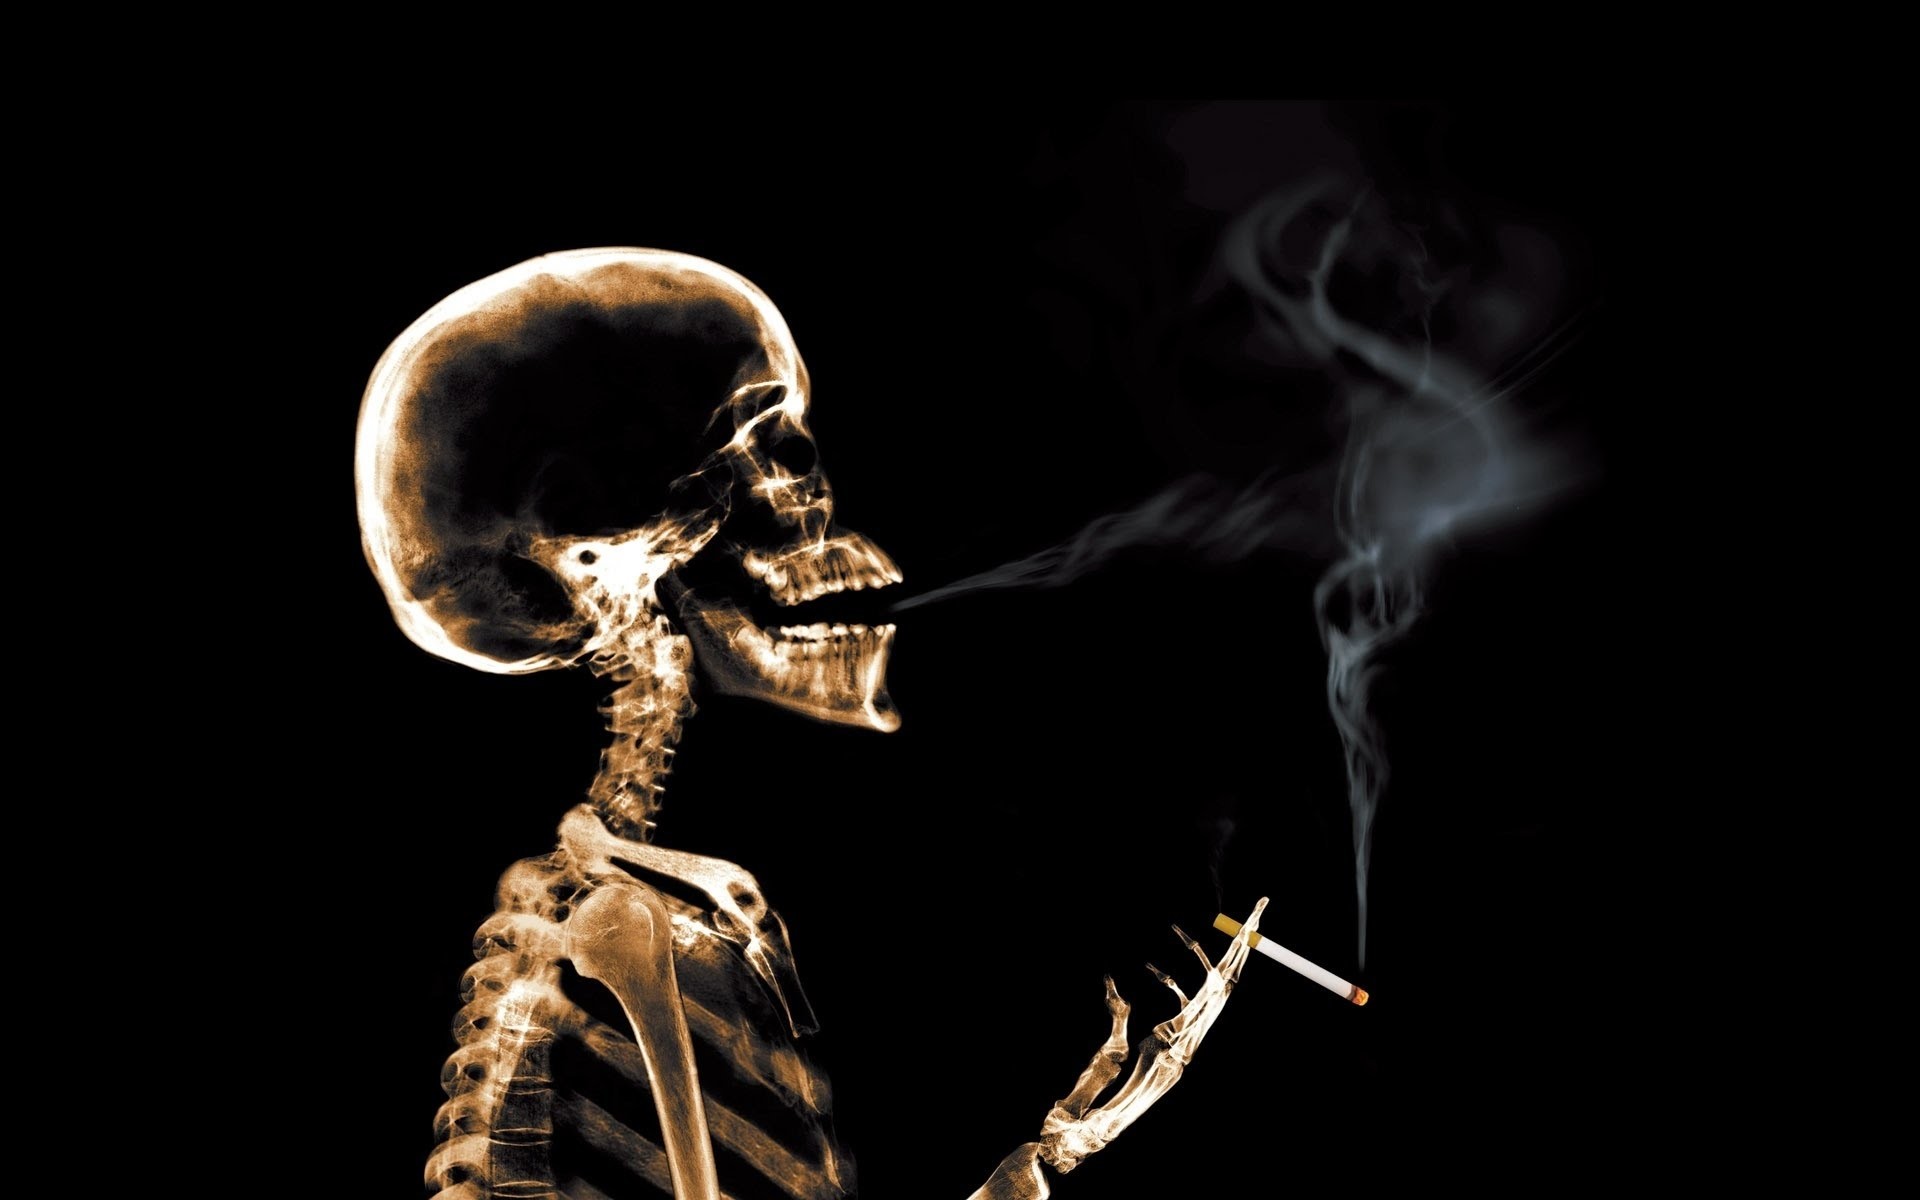 흡연 벽지 다운로드,해골,인간,연기,인간의 몸,사진술